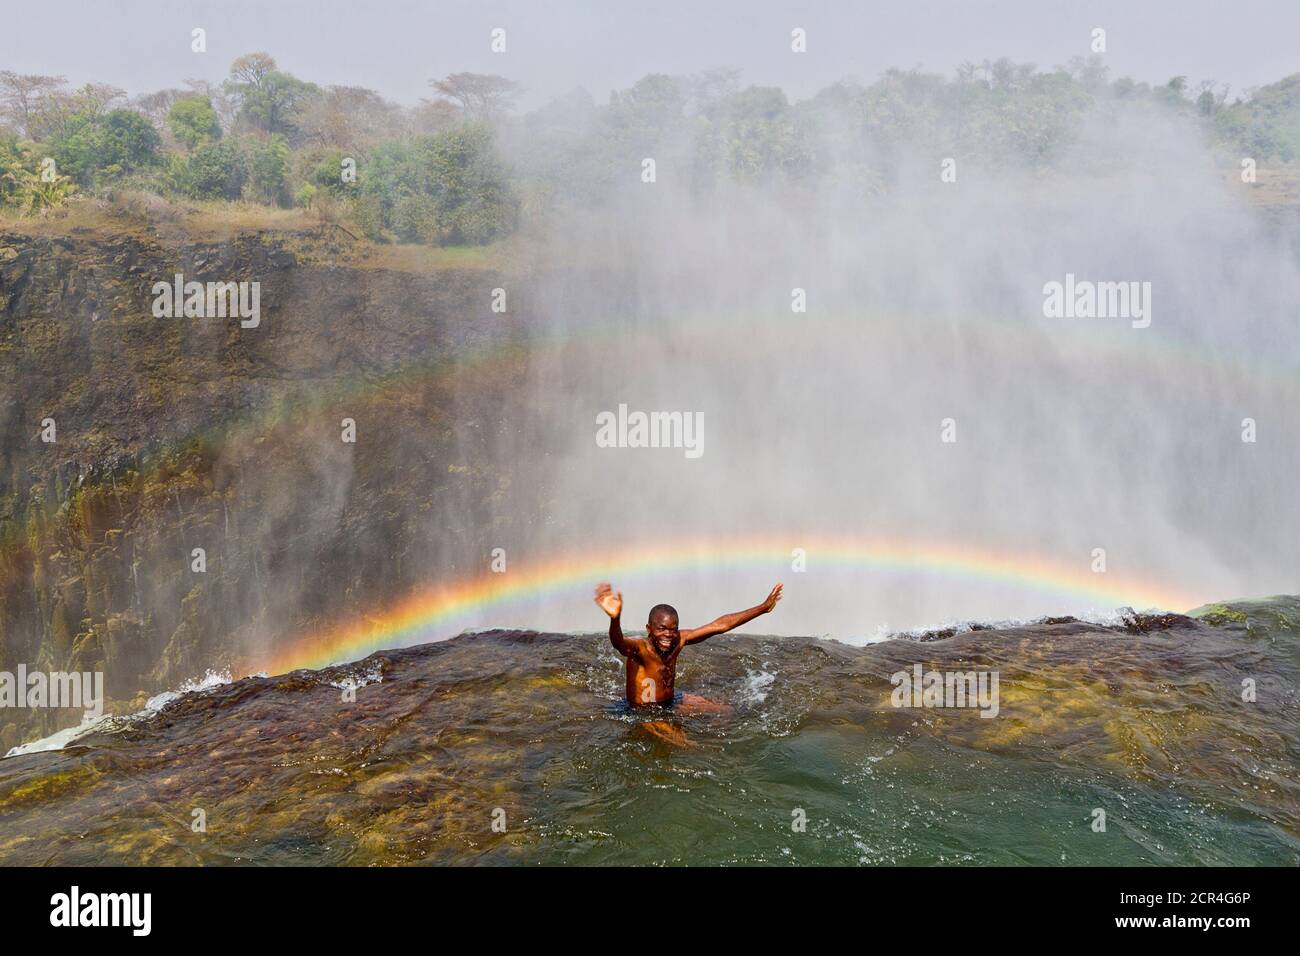 Guide am Lip of Devil's Pool an den Victoria Falls. Es sieht so aus, als ob er über den Wasserfall hinweggefegt wird, aber eine dicke Felsenlippe schützt die Menschen. Victoria Falls ist fast eine Meile breit und 360 Fuß tief und aus der Luft, sieht aus wie die Erde in zwei gerissen wurde. Sambia, Afrika. Stockfoto